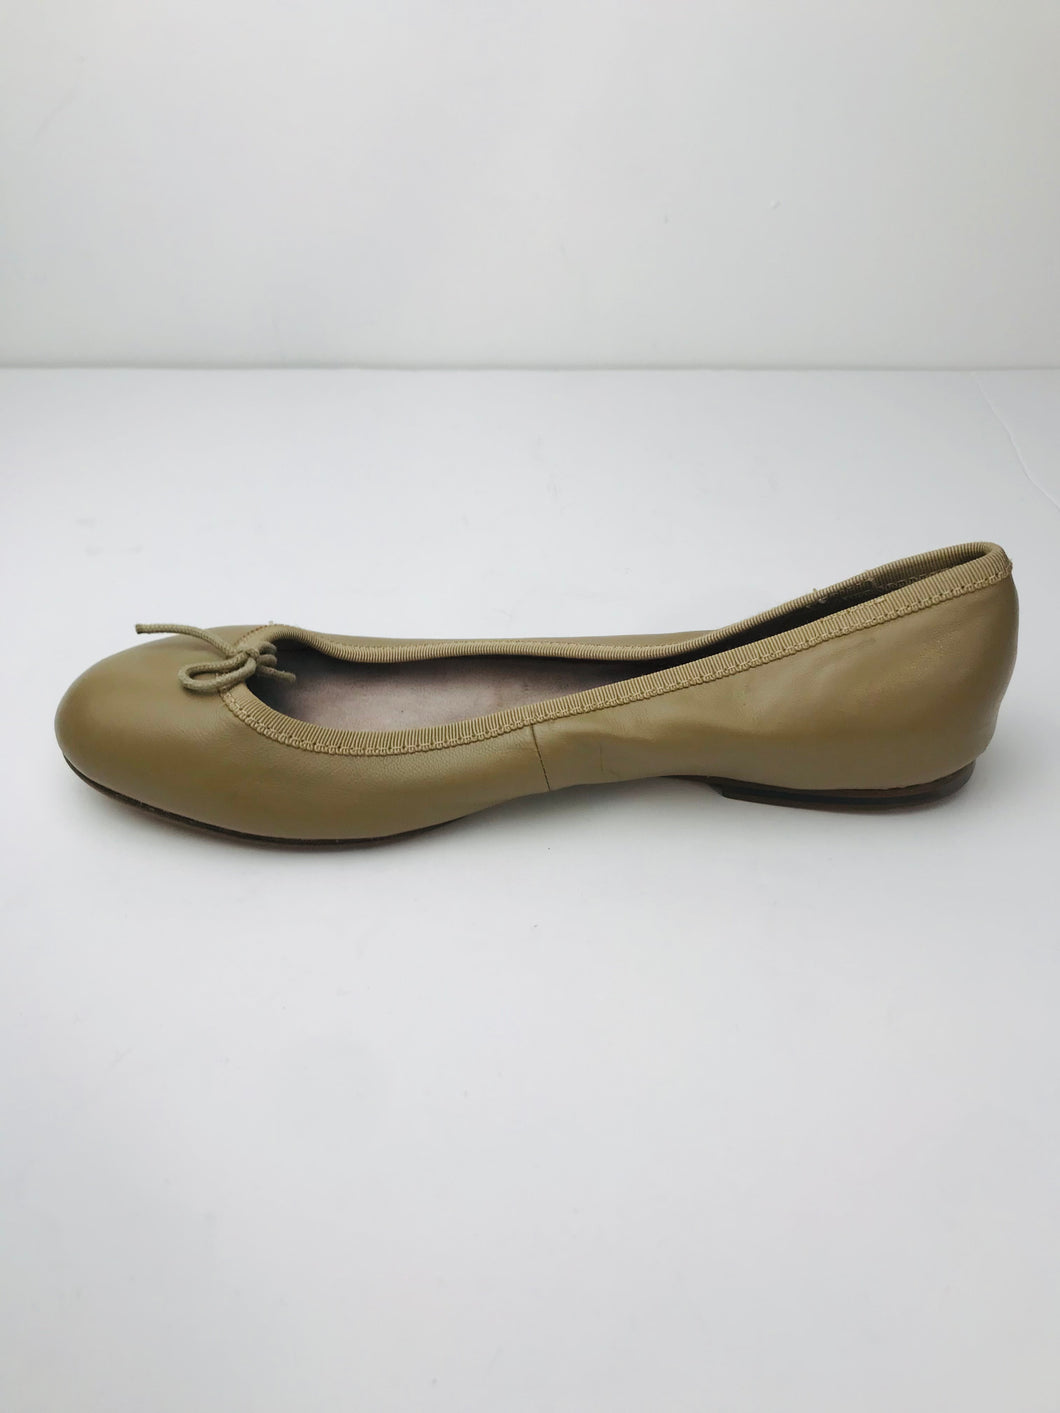 Bloch Women's Leather Flats Shoes | EU38 UK5 | Beige